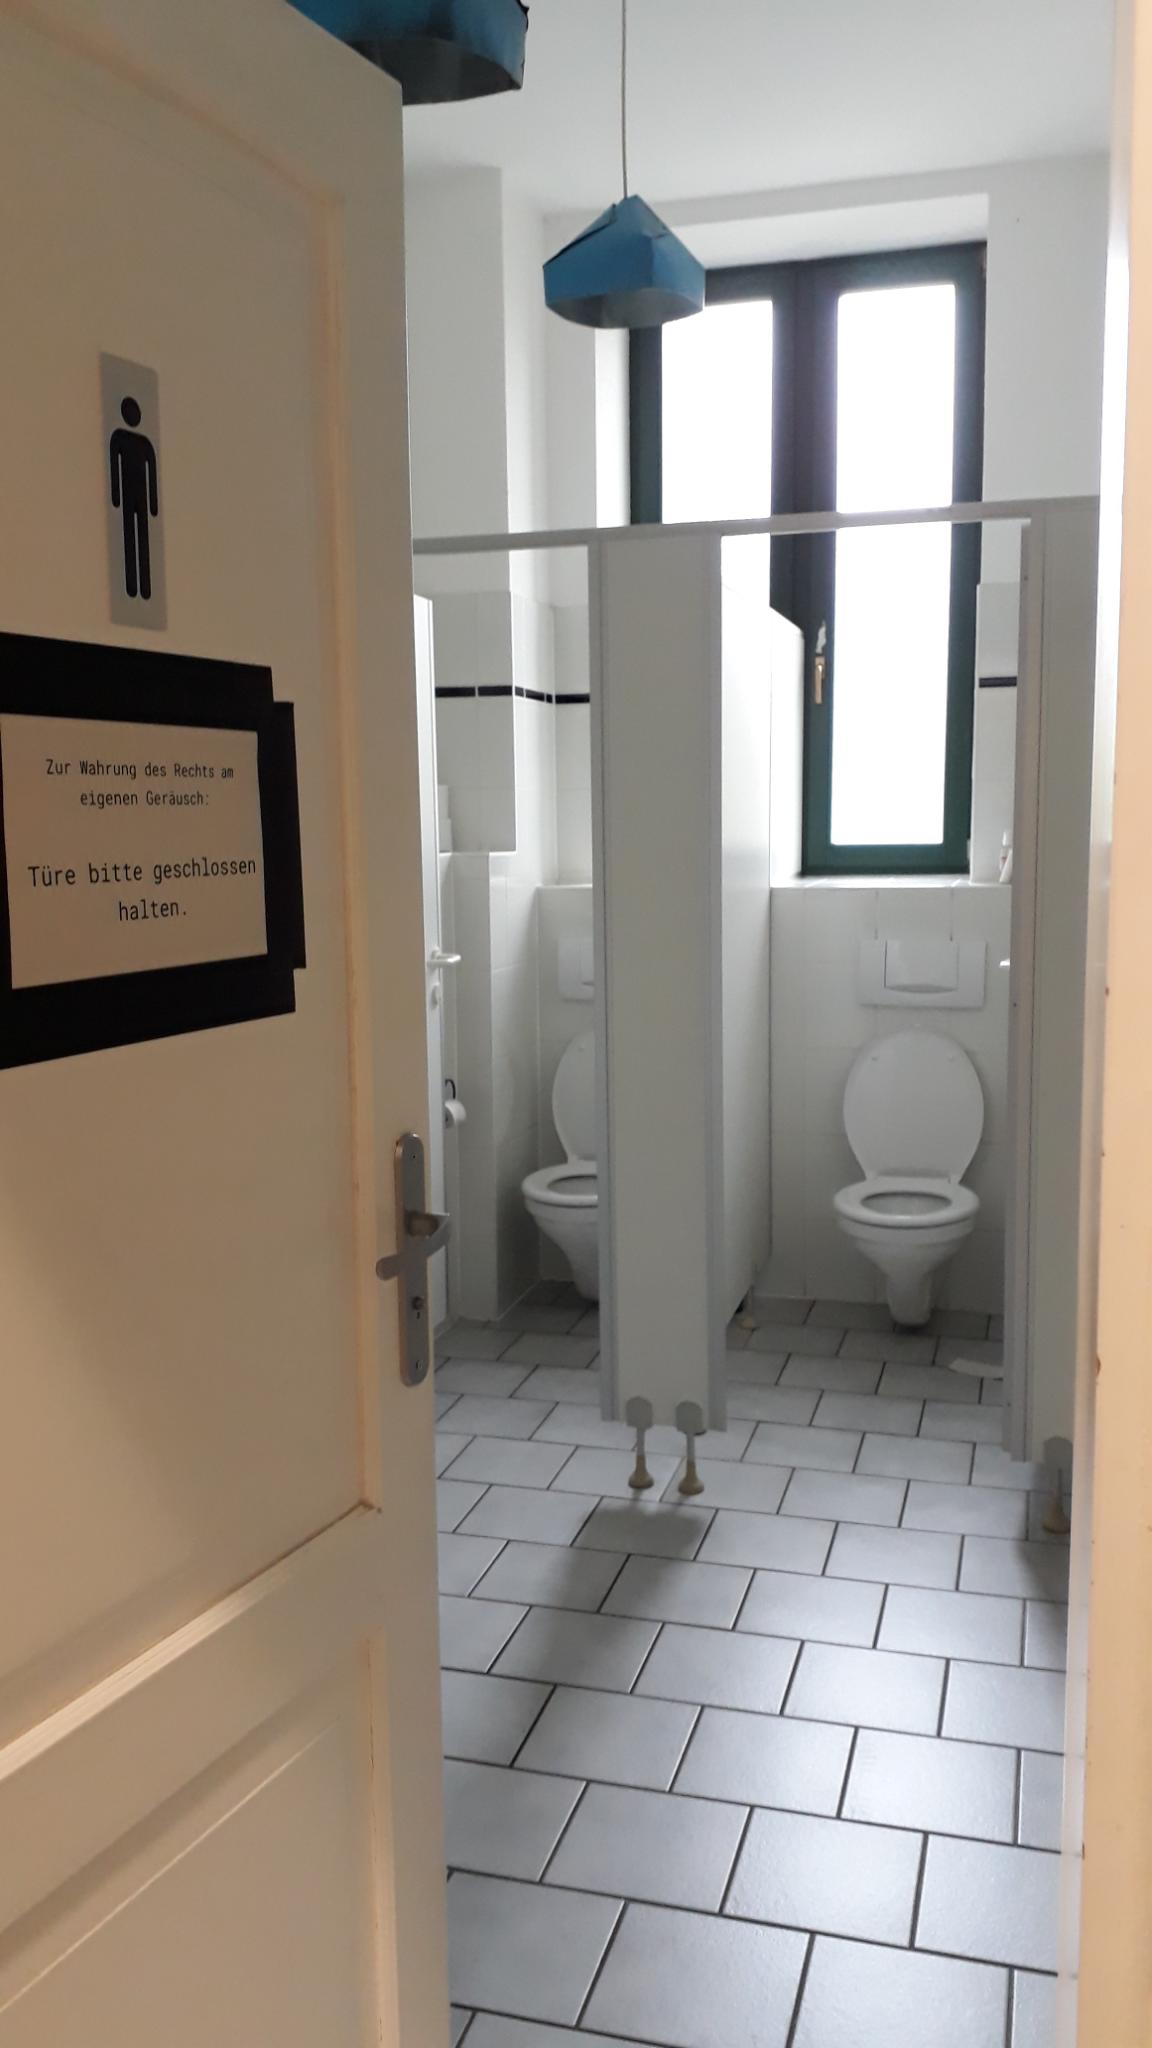 Von außen fotografiert. Eine offene Tür die ins inner des Herren WC-Raums führt. Im Hintergrund zwei offene WC-Kabinen. Blaue Lampenschirme hängen von der Decke.